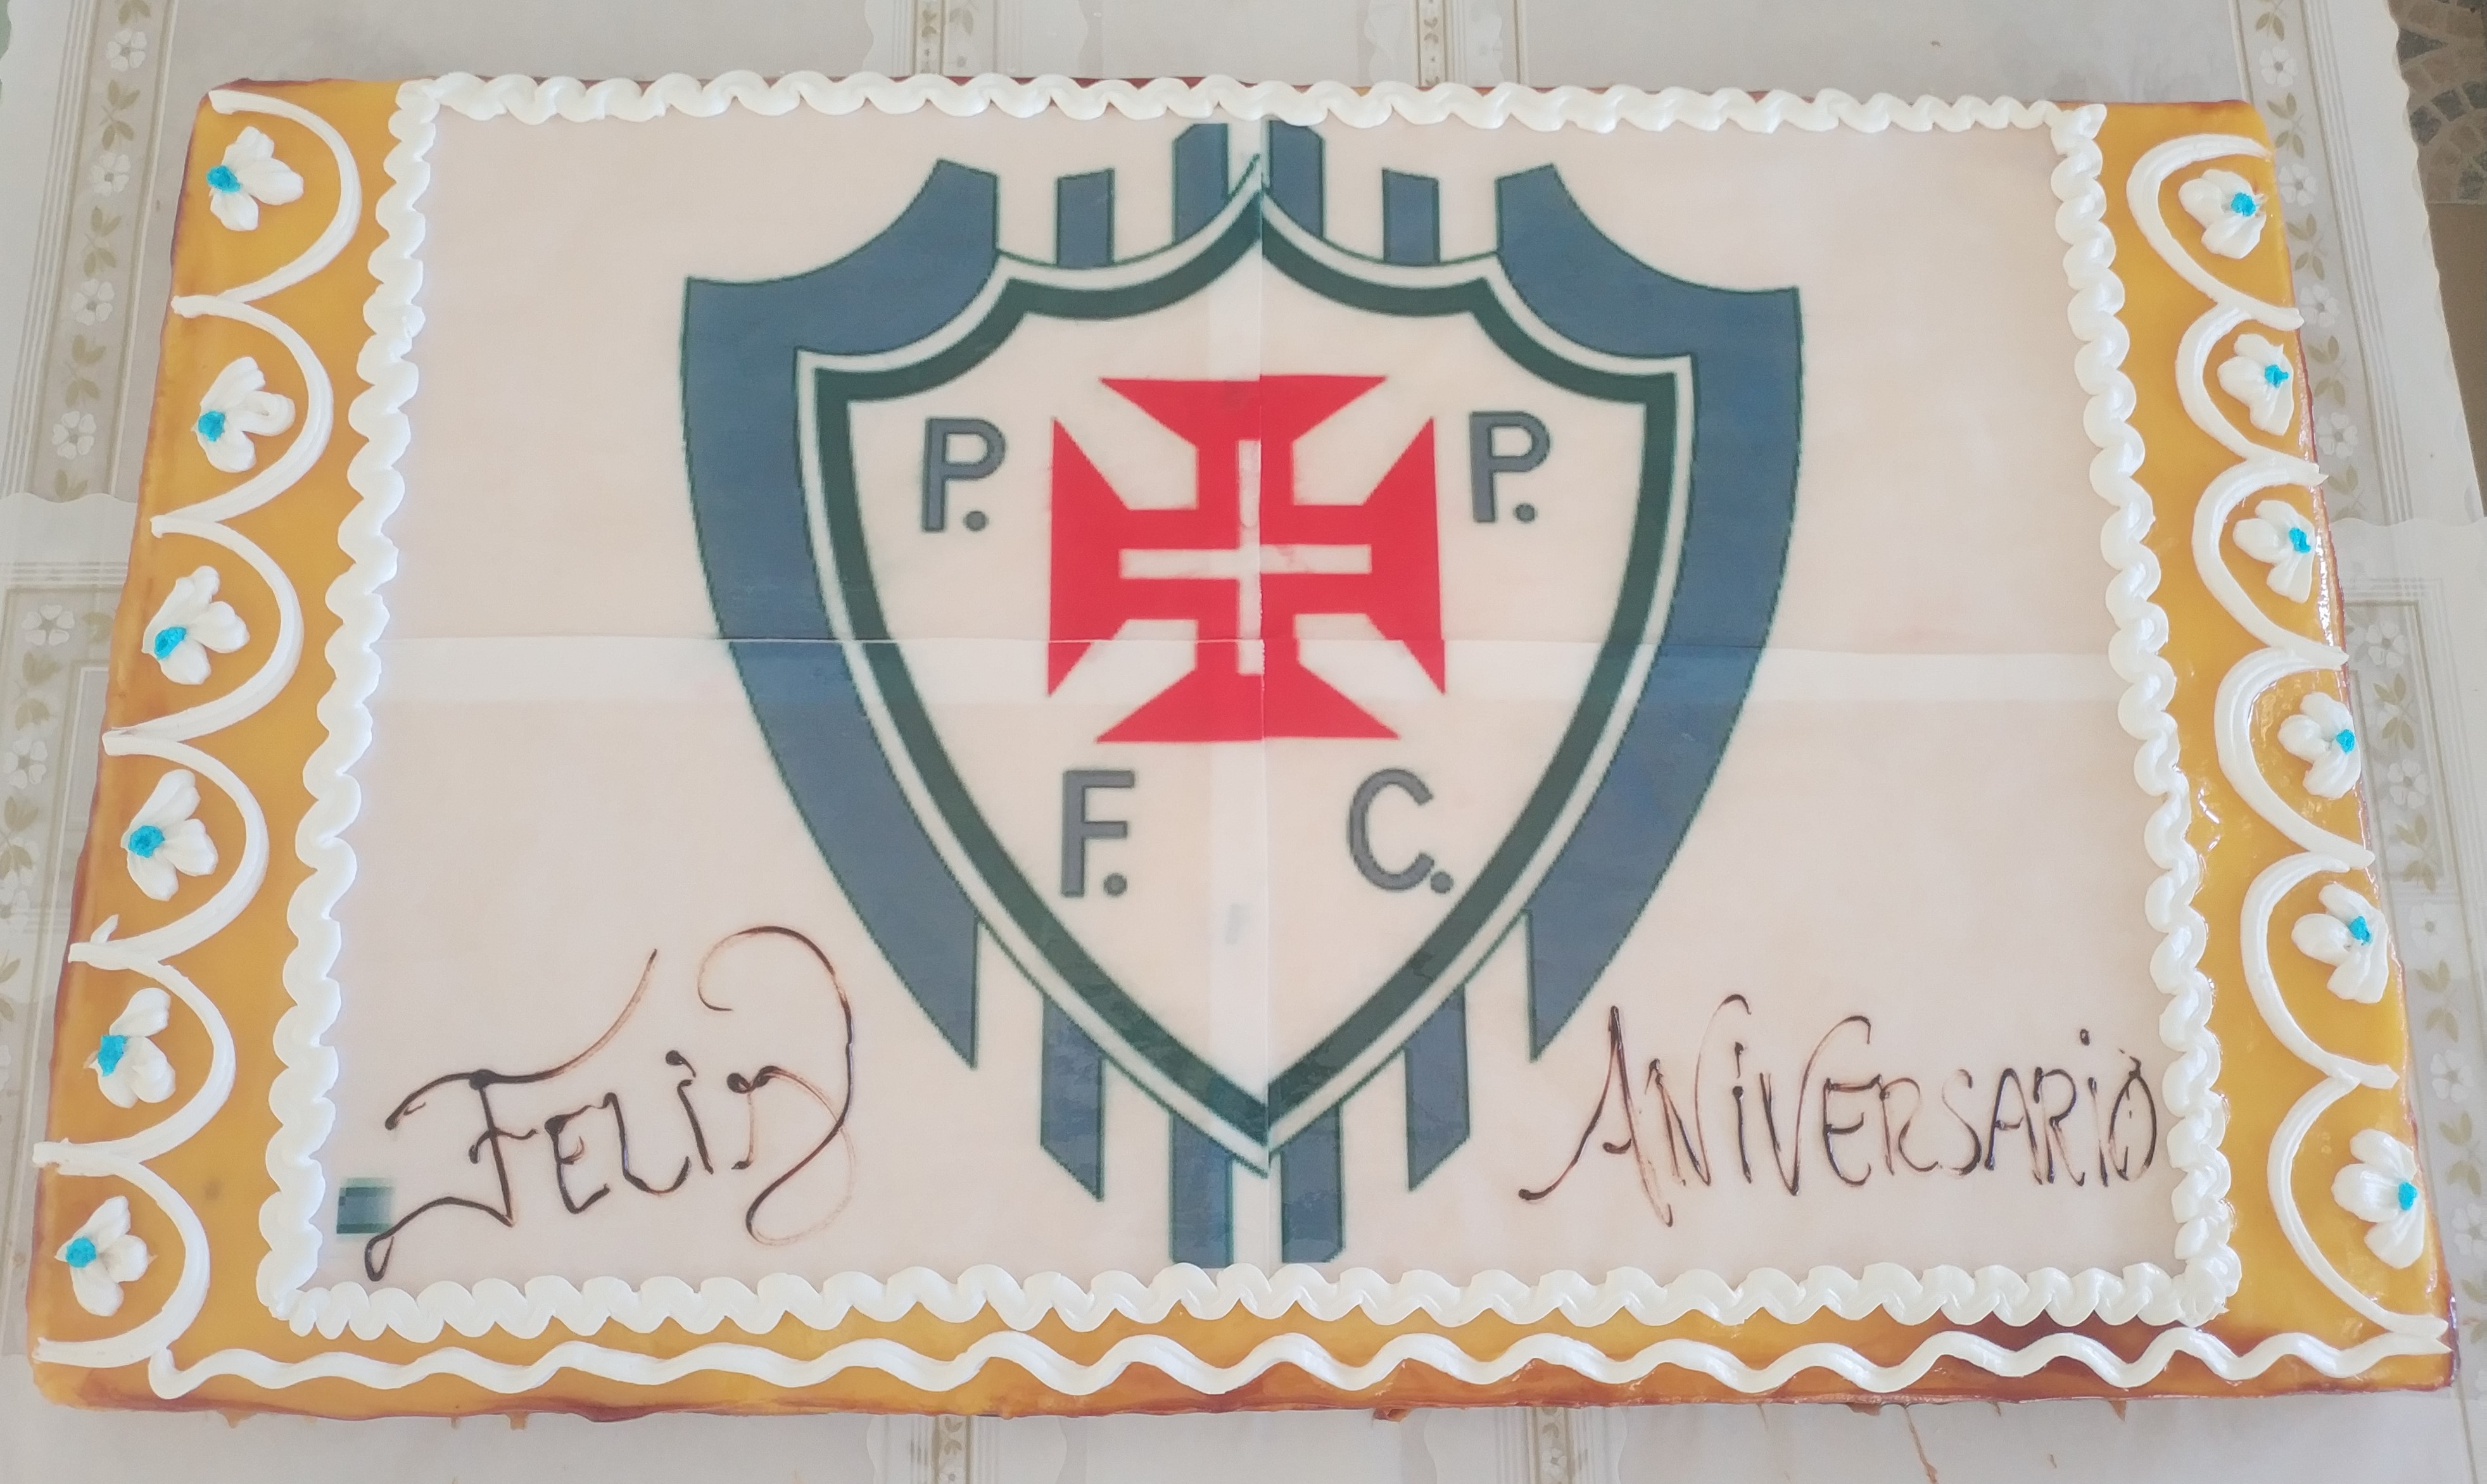 96.º aniversário do Paio Pires FC